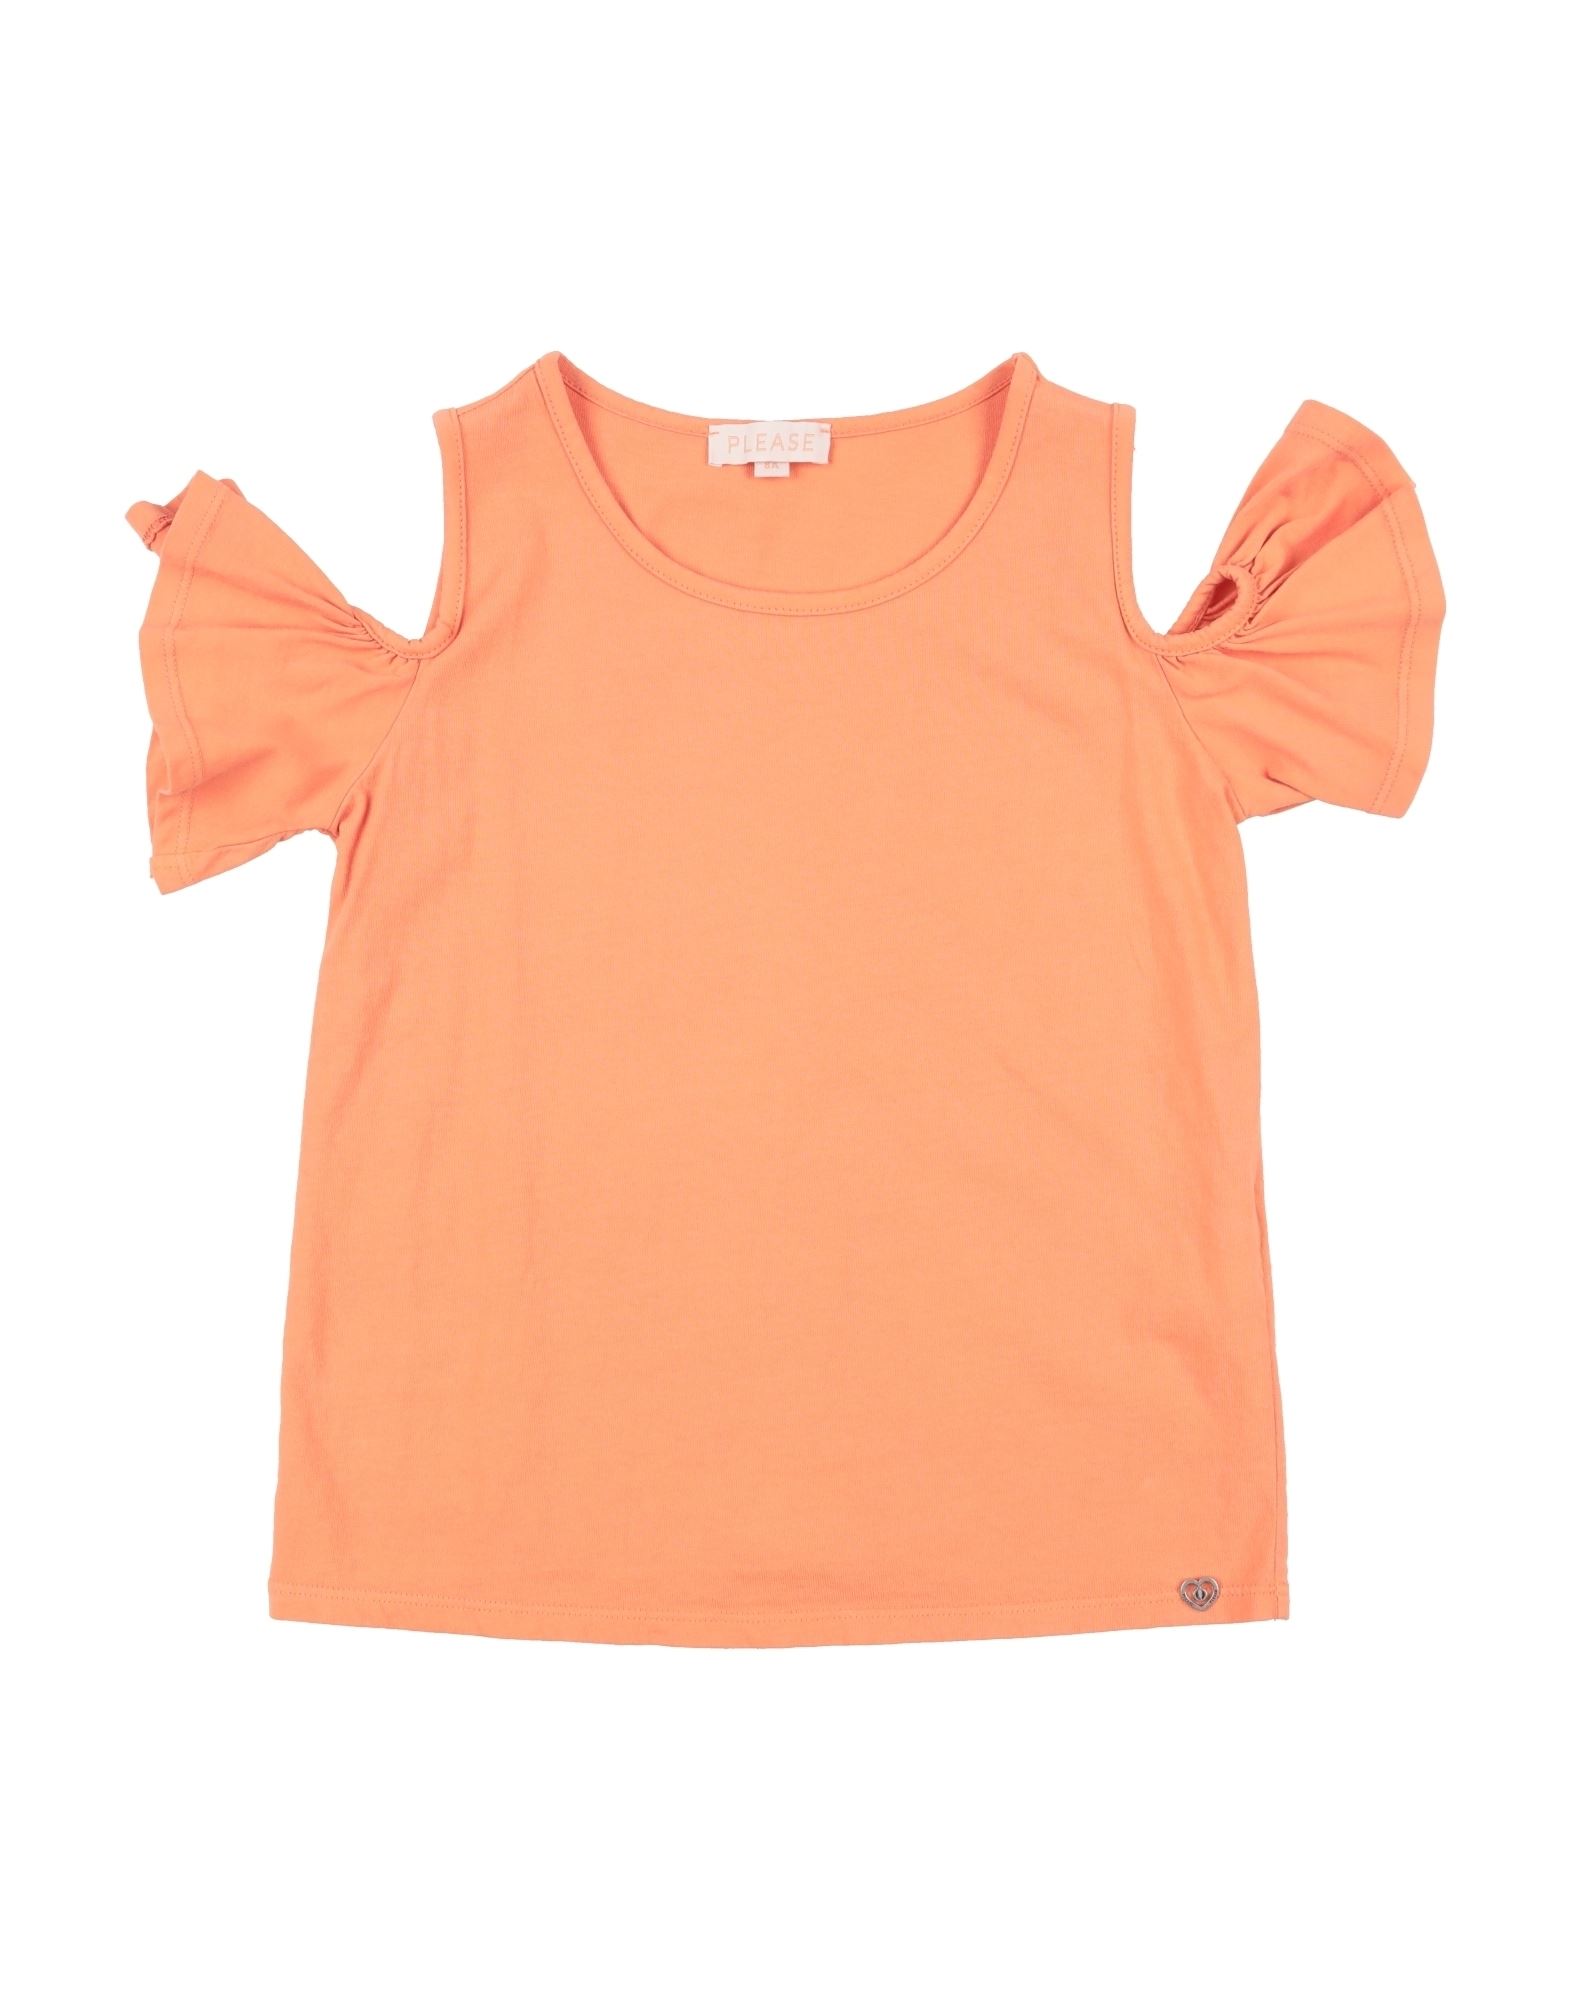 PLEASE T-shirts Kinder Orange von PLEASE